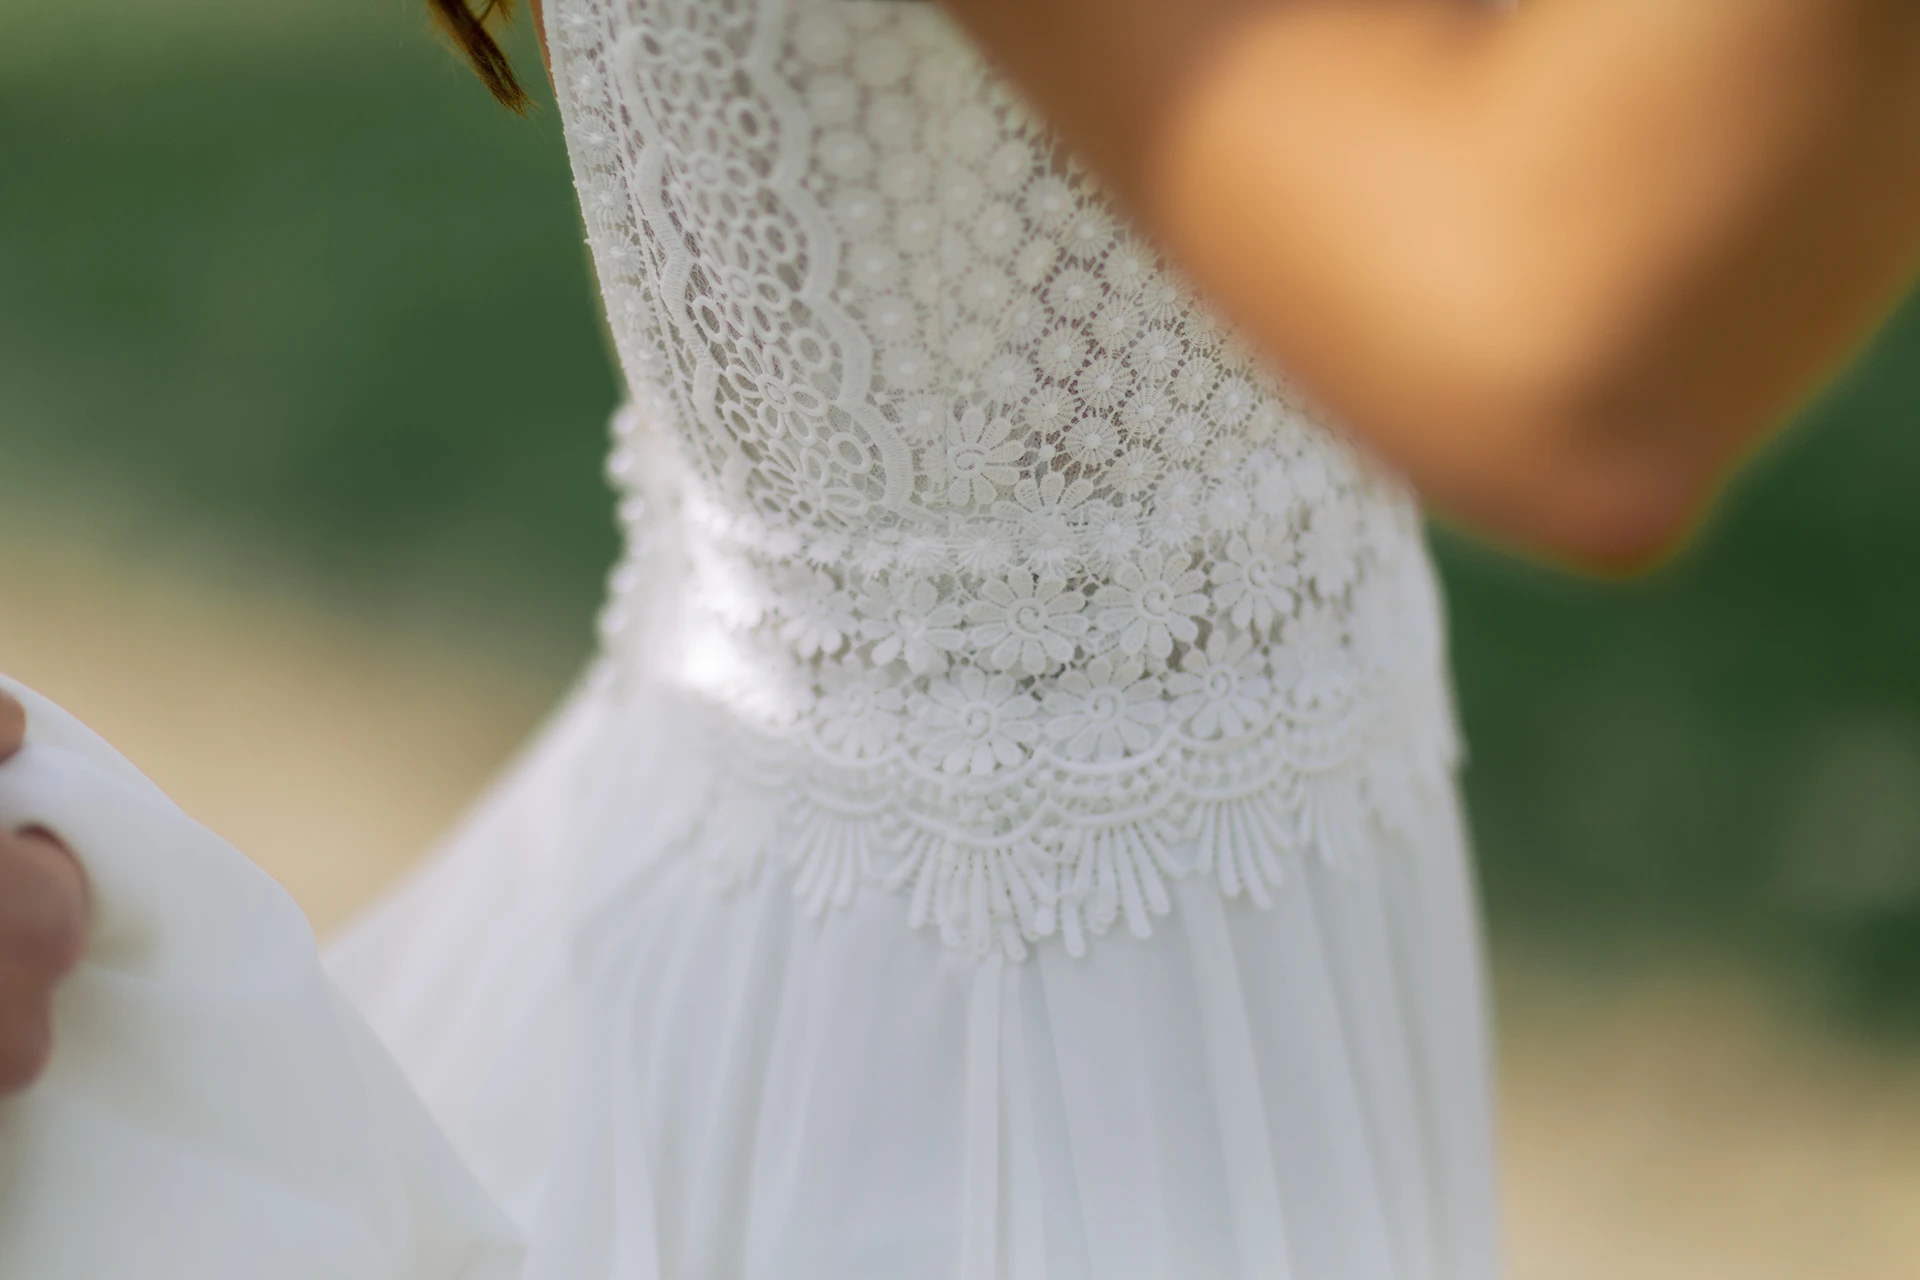 Detailaufnahme des Brautkleids, man erkennt die feinen Muster.